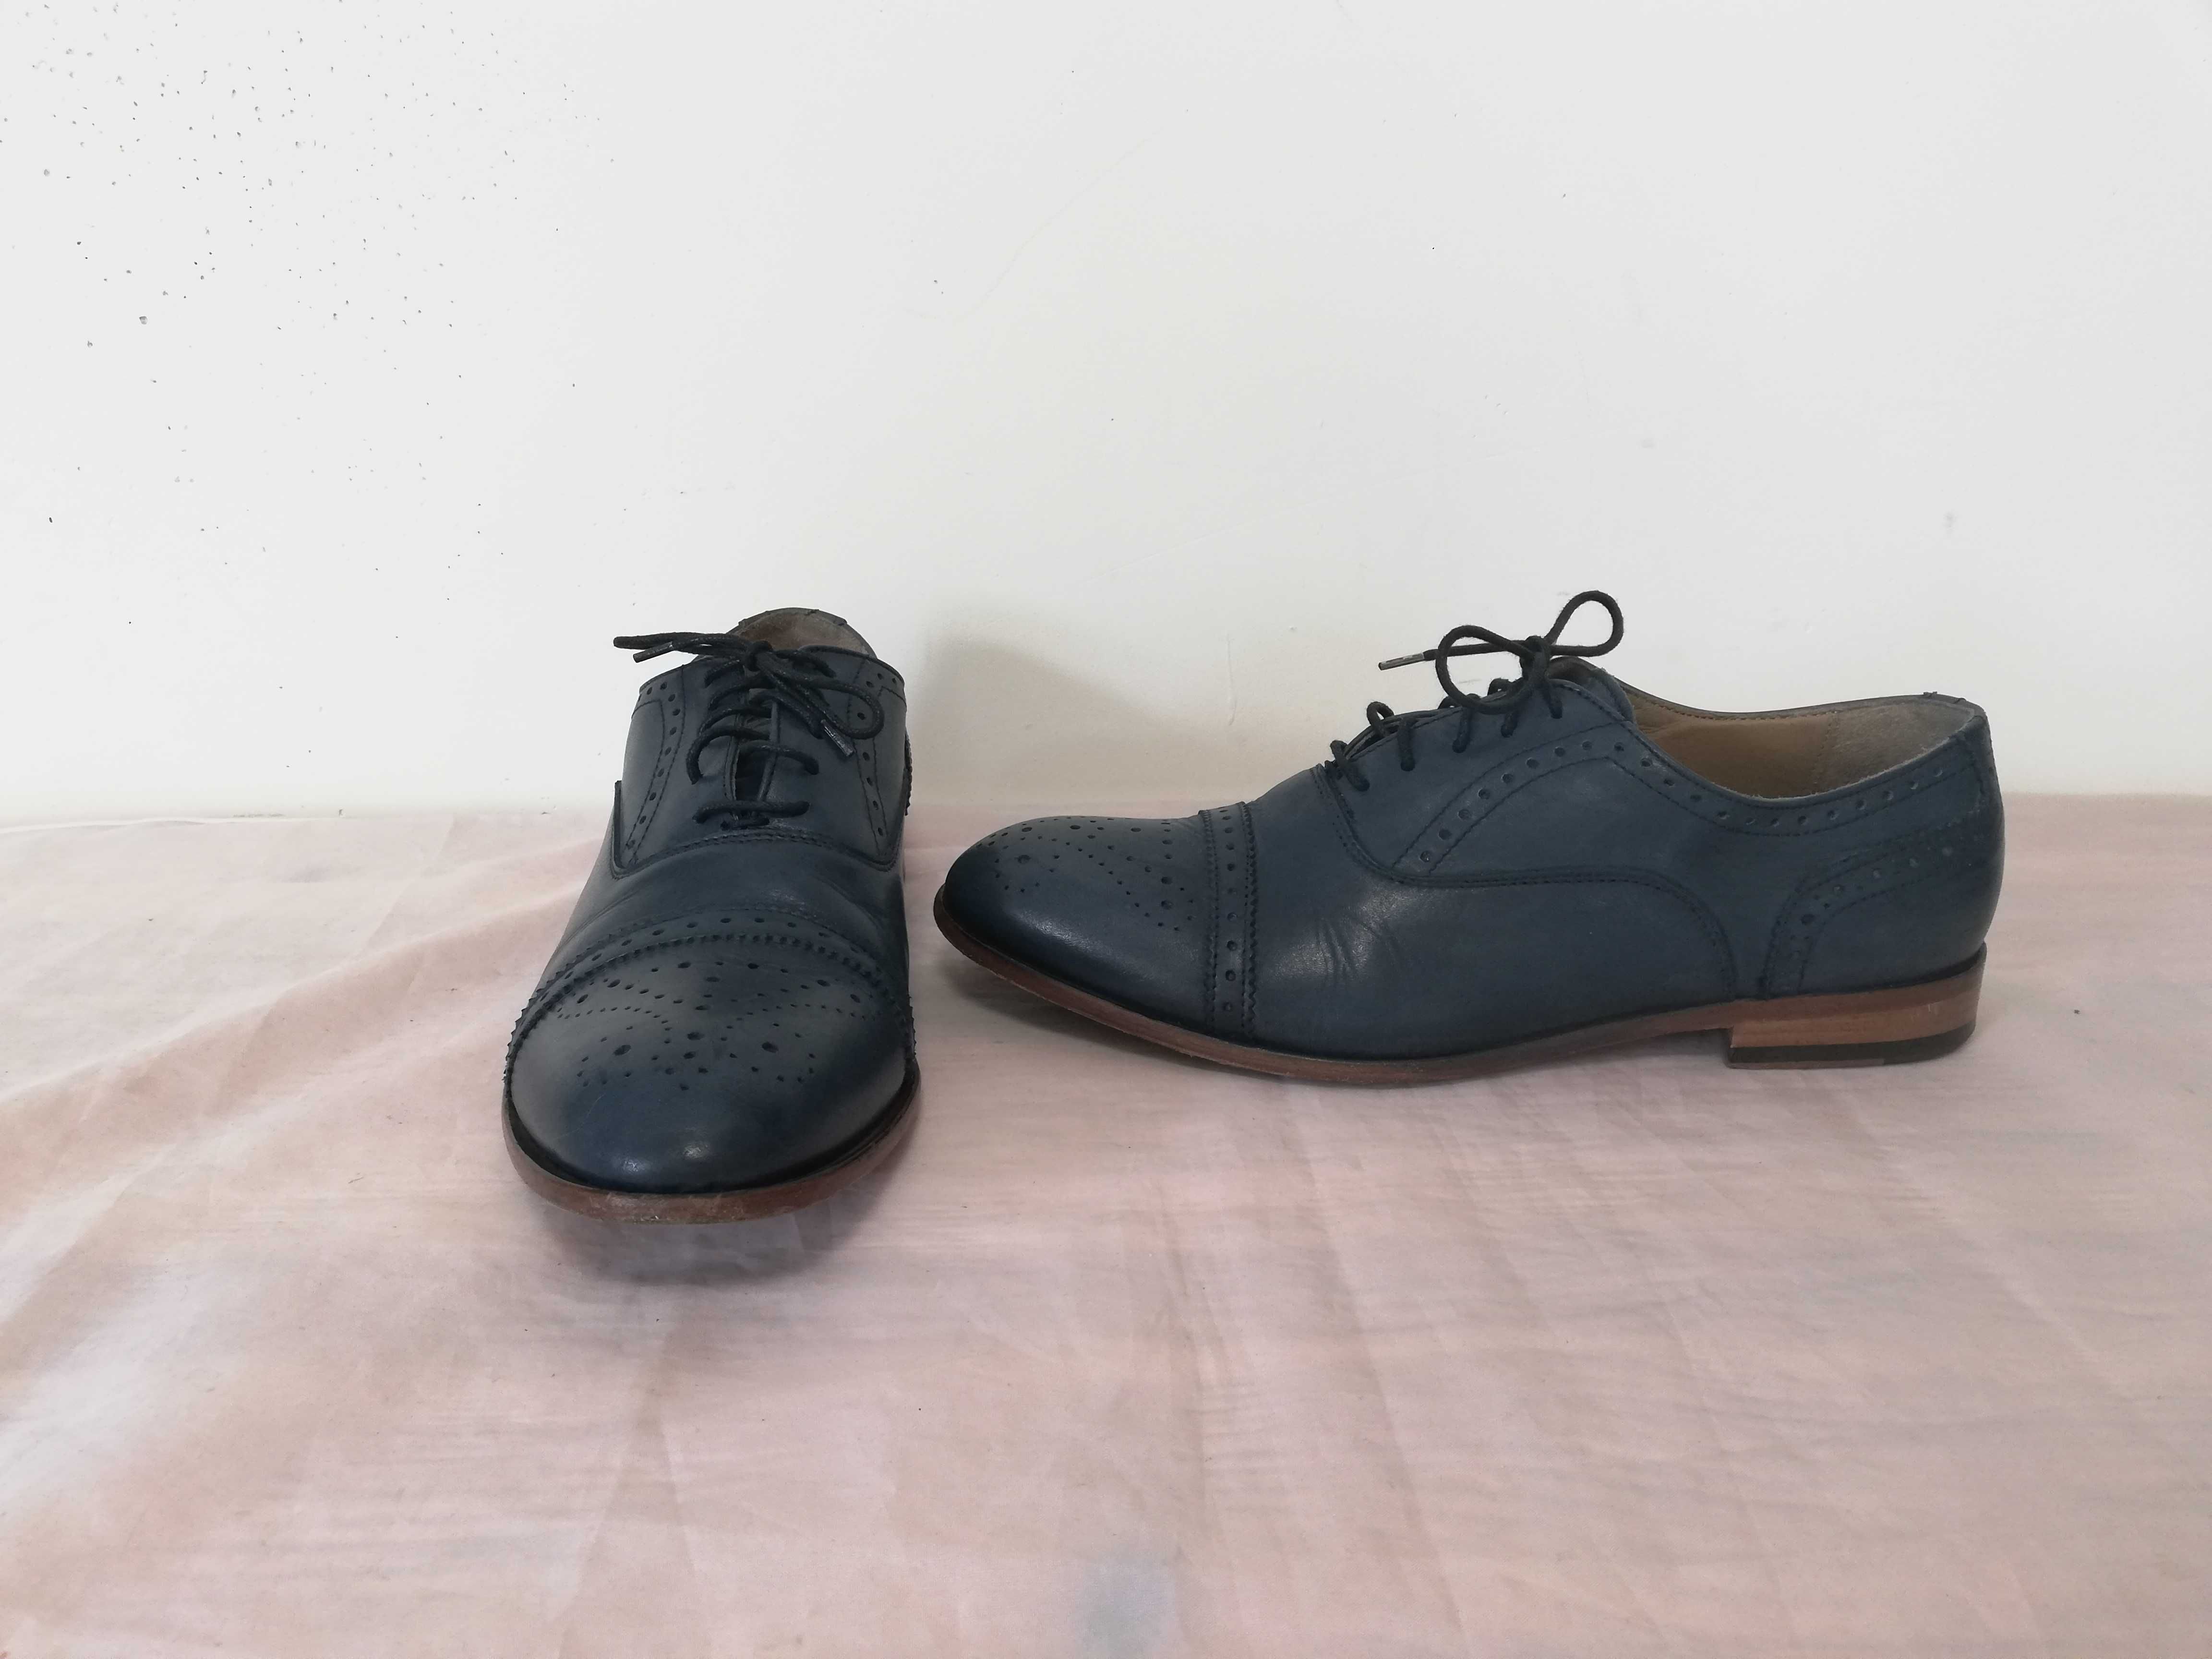 Buty skórzane Venezia r. 42 , wkładka 28 cm